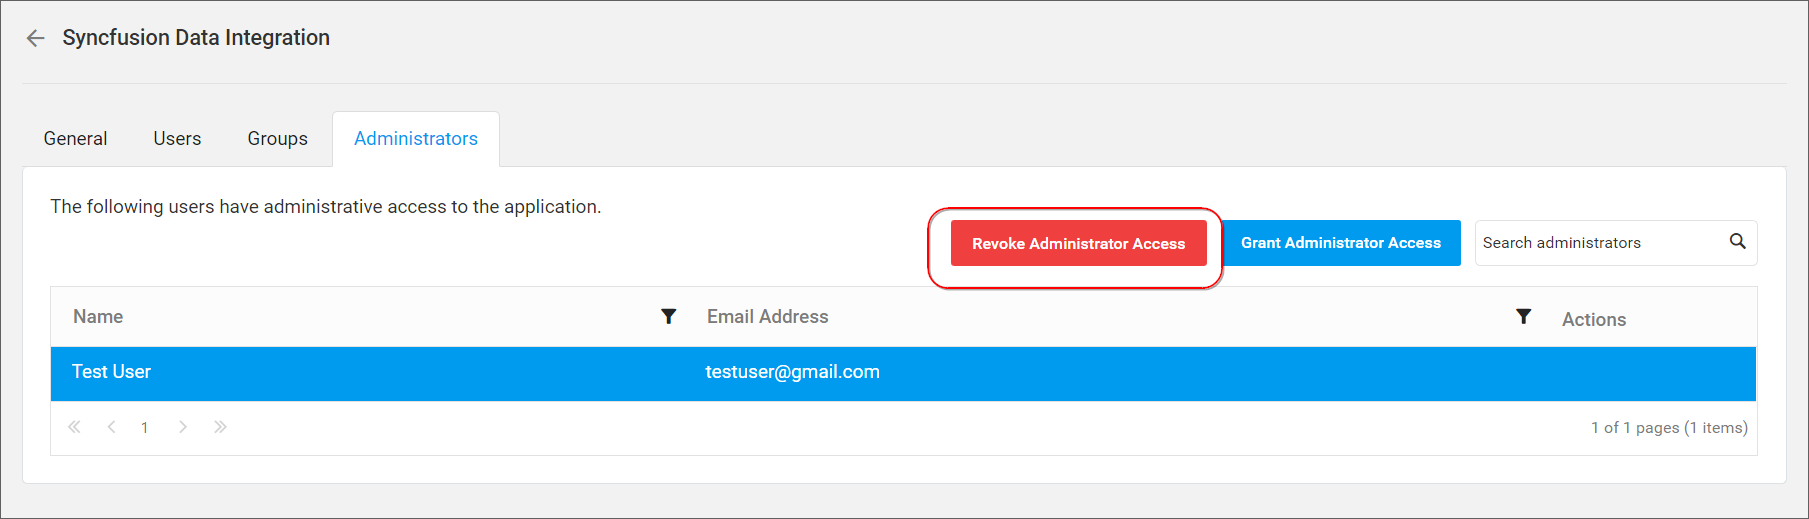 Revoke admin access button